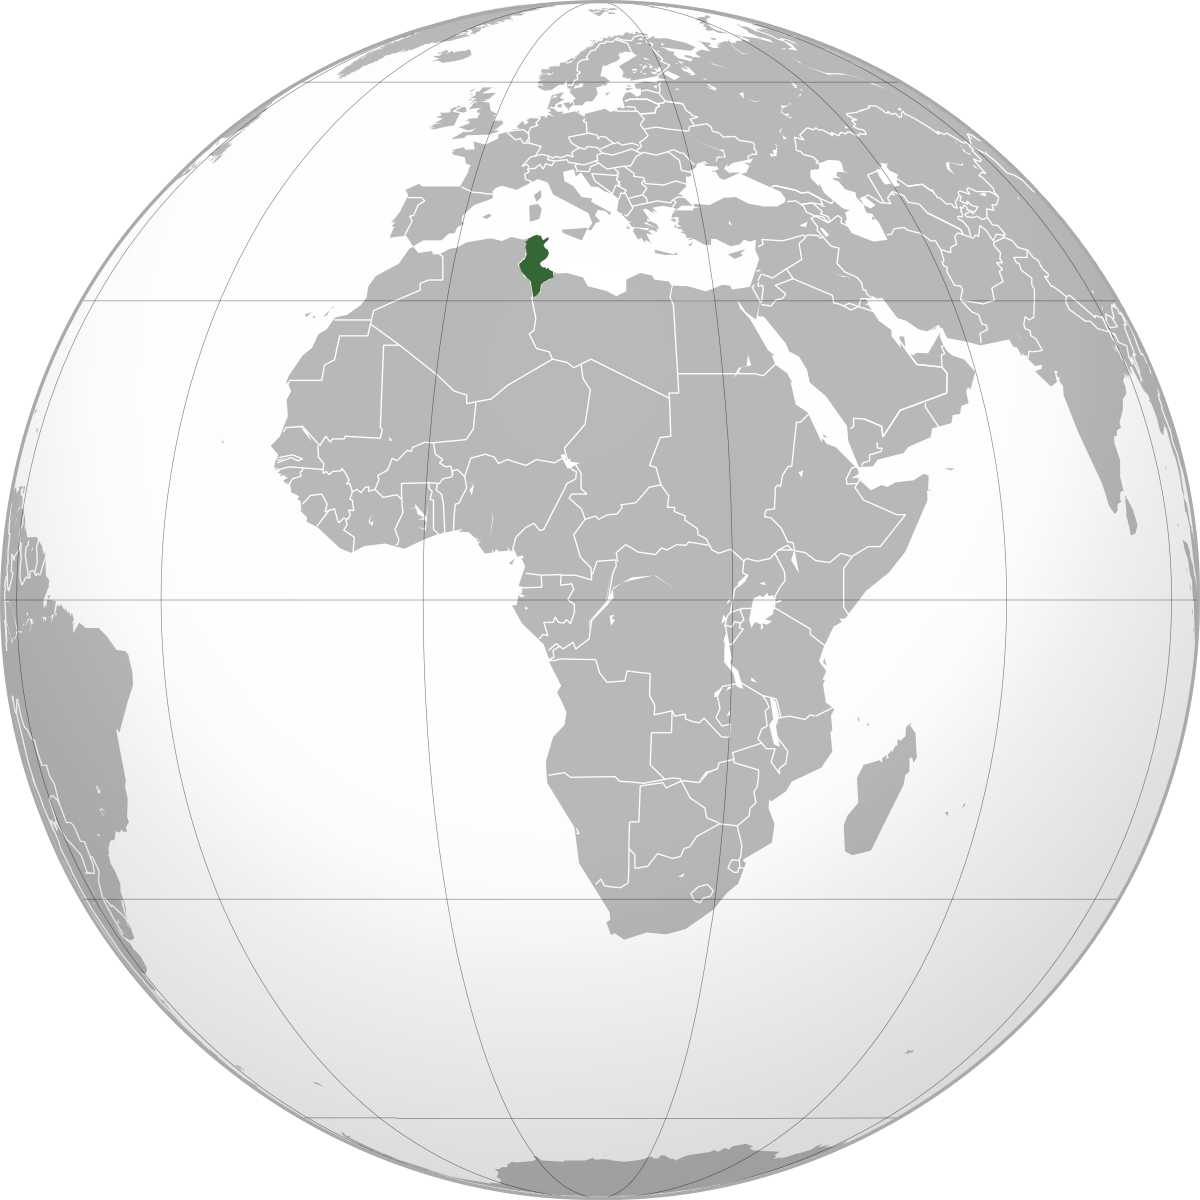 tunisie sur la carte du monde